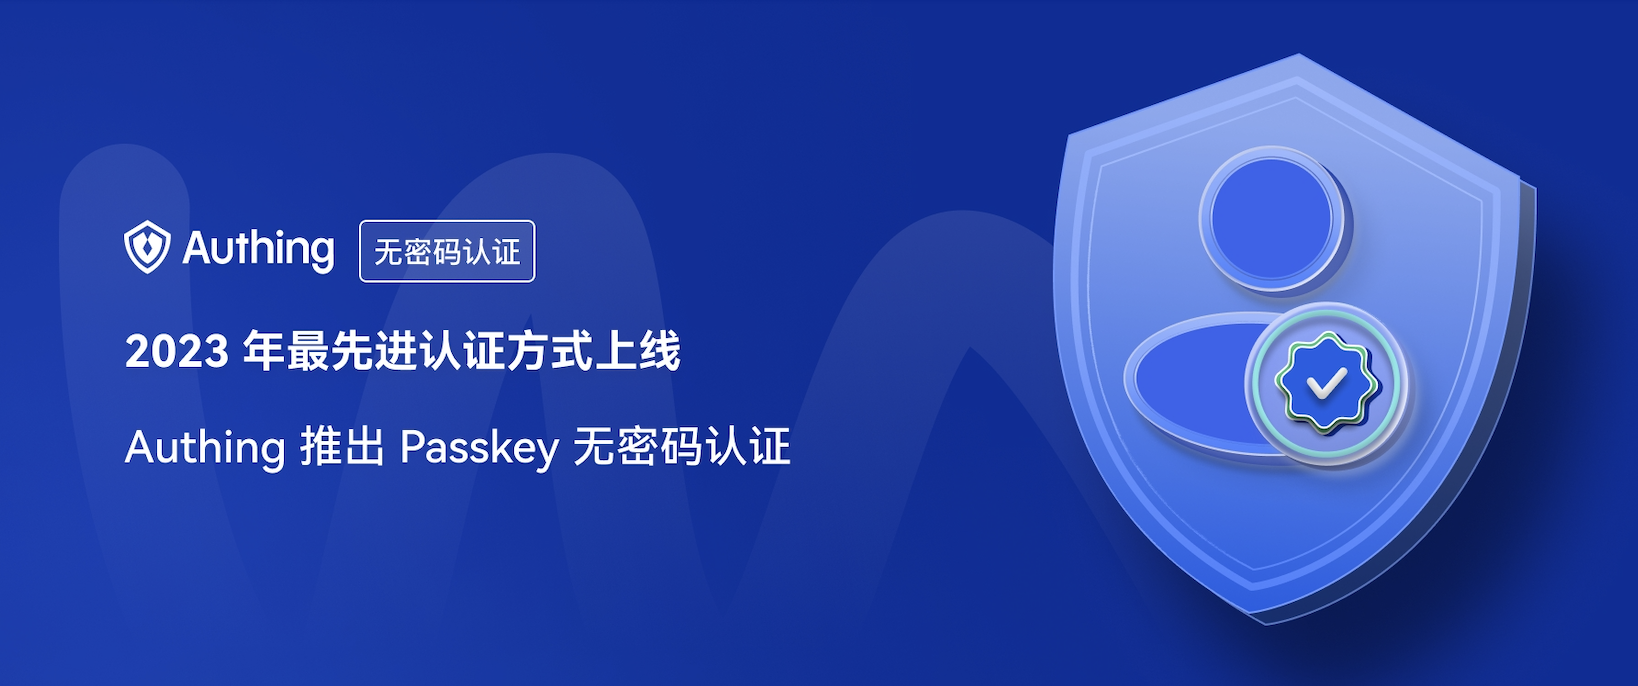 2023 年最先进认证方式上线，Authing 推出 Passkey 无密码认证